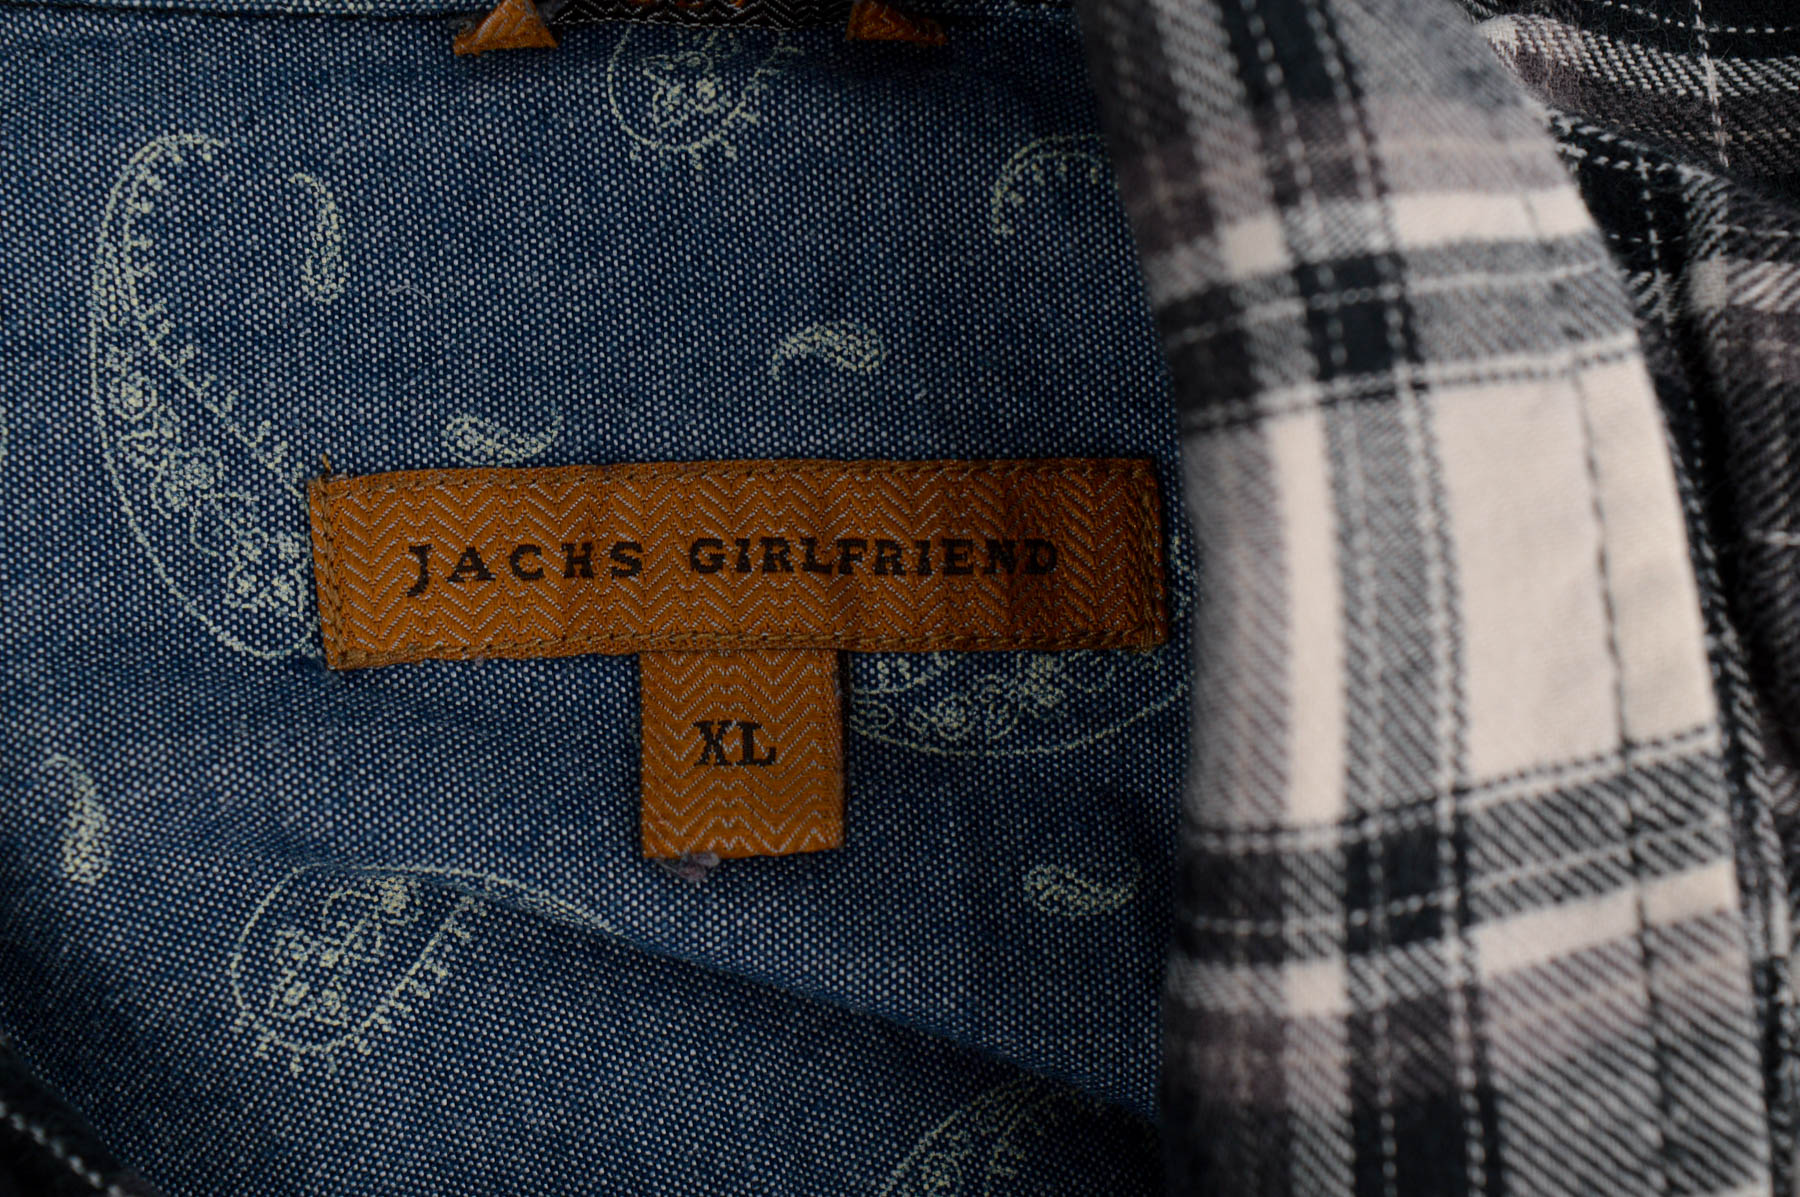 Women's shirt - Jachs Girlfriend - 2